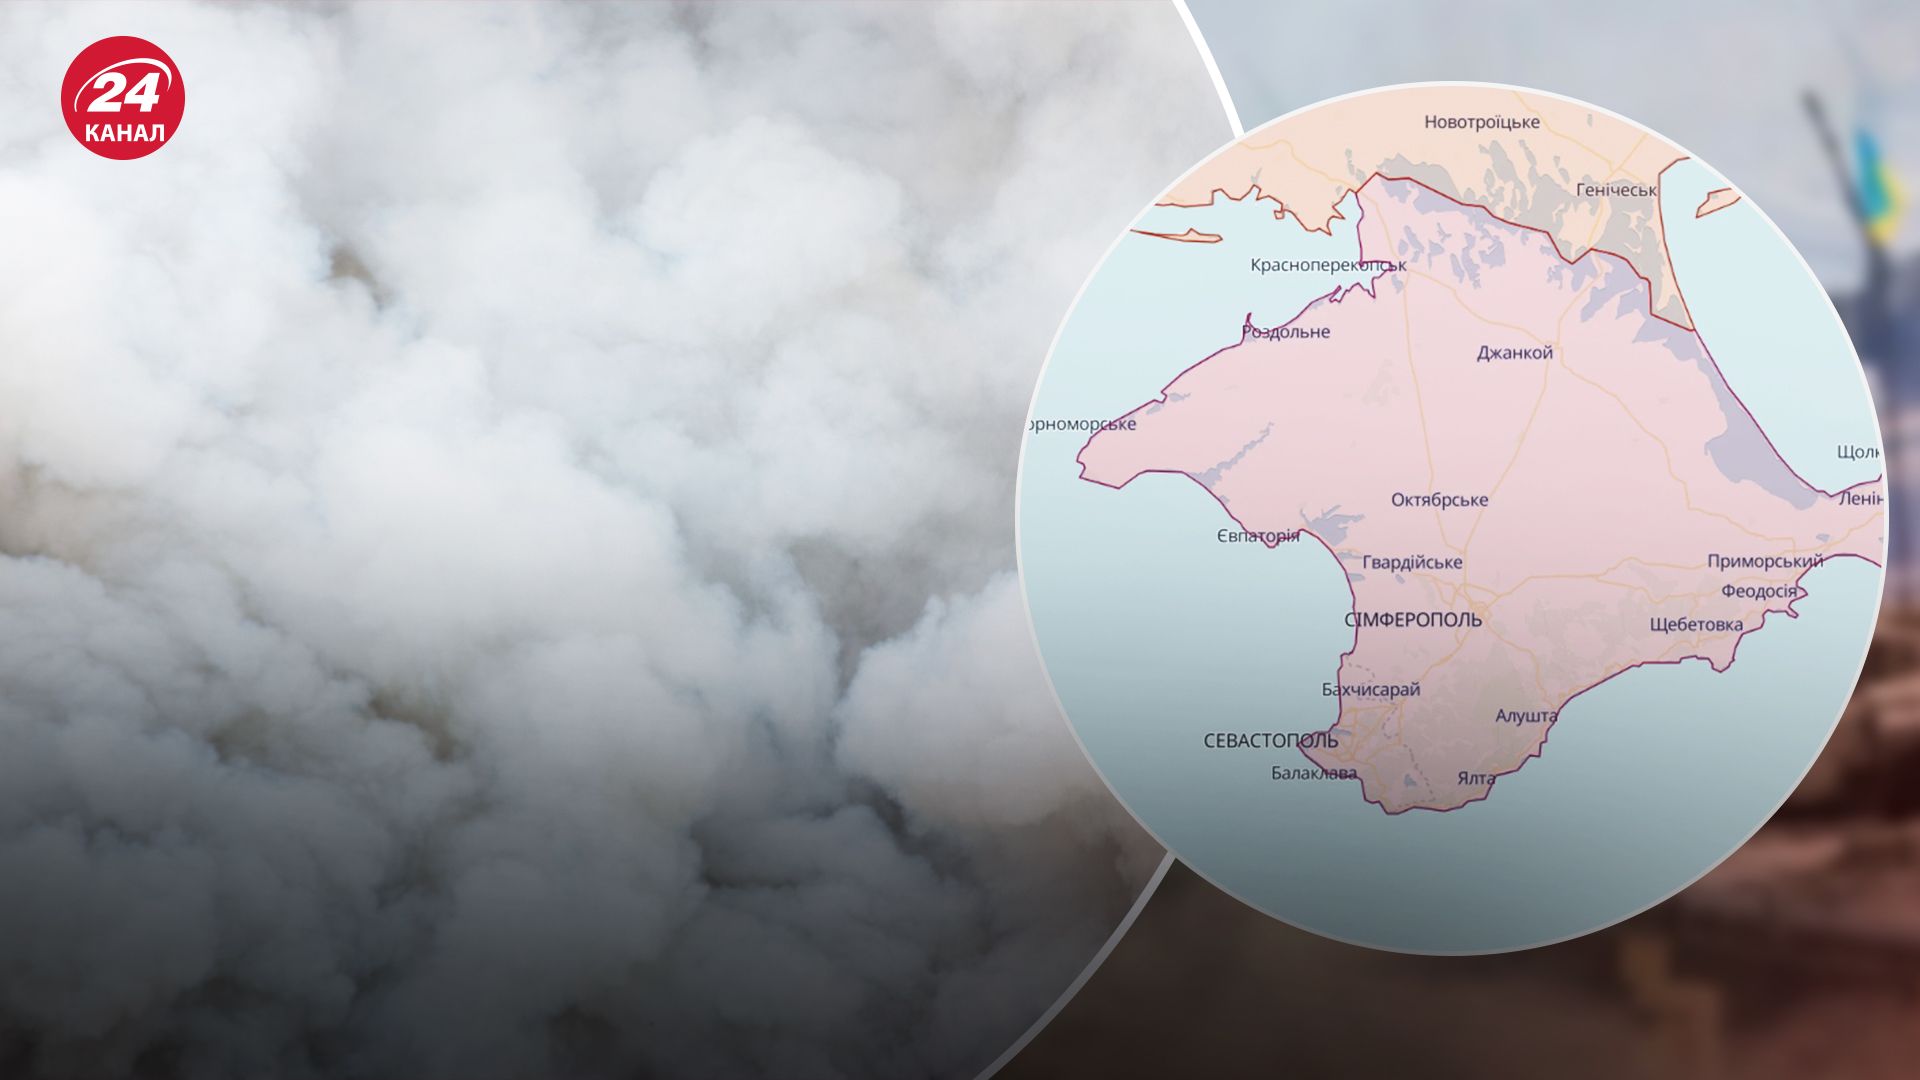 Видніється дим в районі бухт: в Криму оголосили повітряну тривогу - 24 Канал